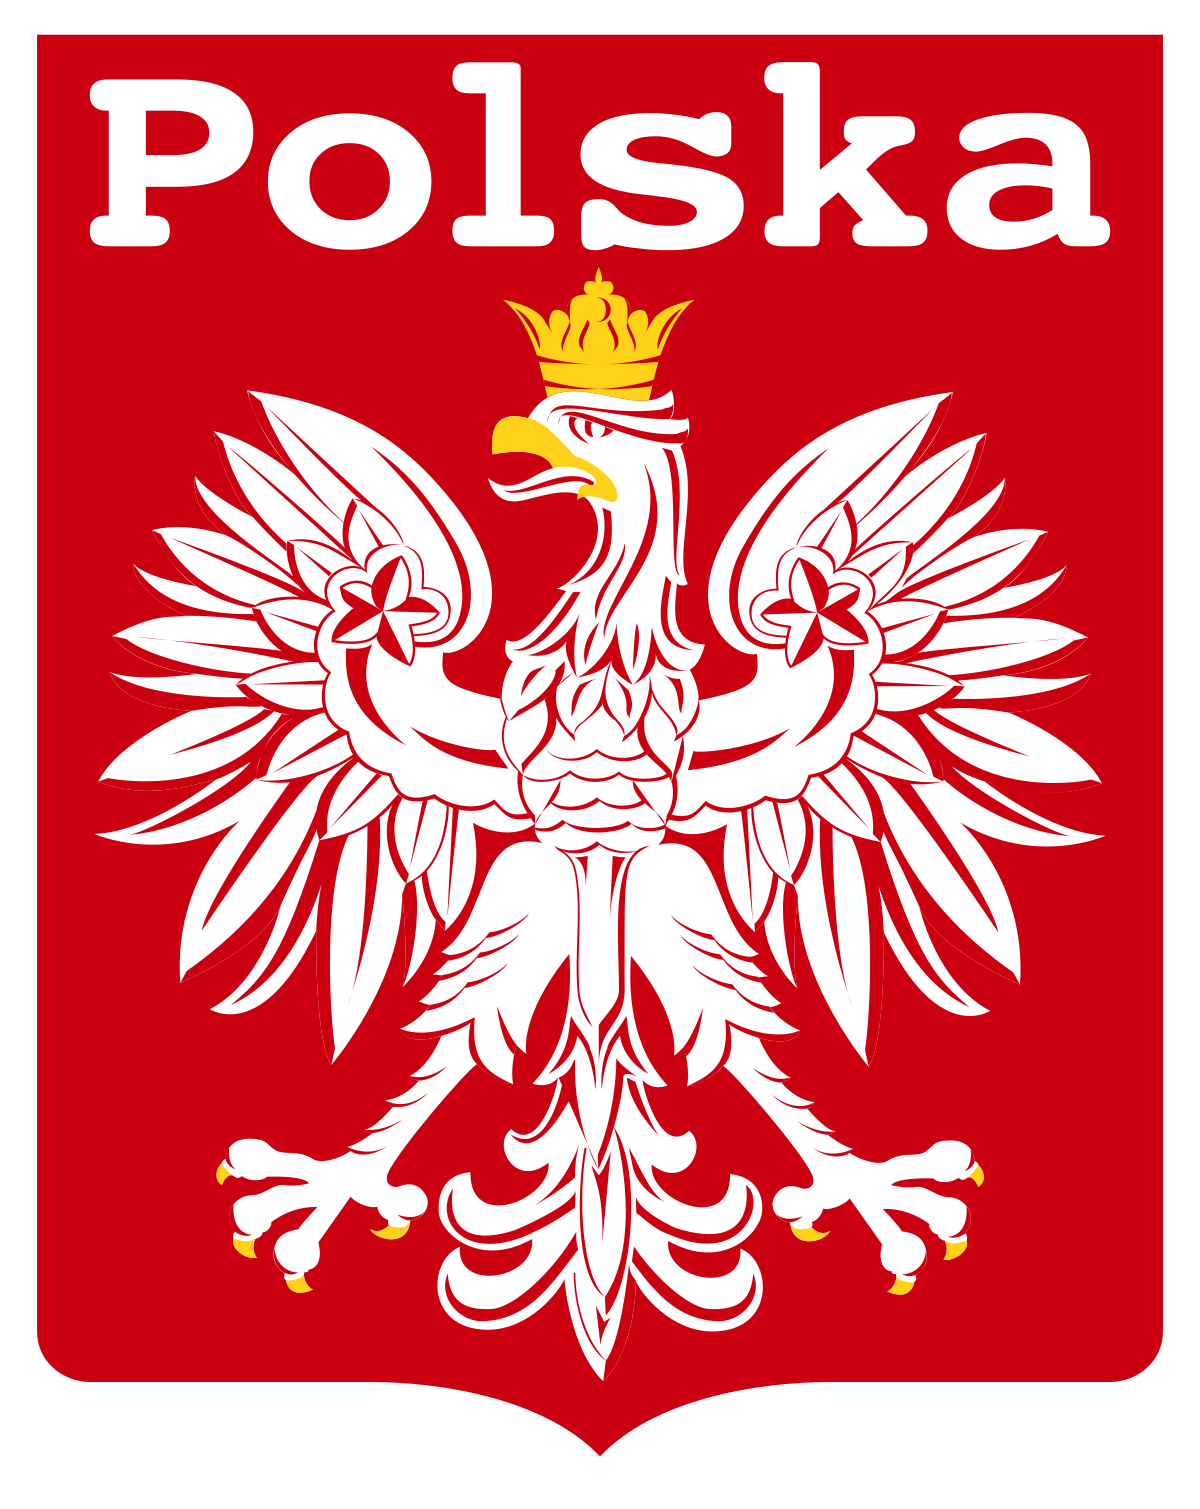 Польша флаг и герб. Польская эмблема. Логотип сборной Польши. Символы Польши. Какой символ польши